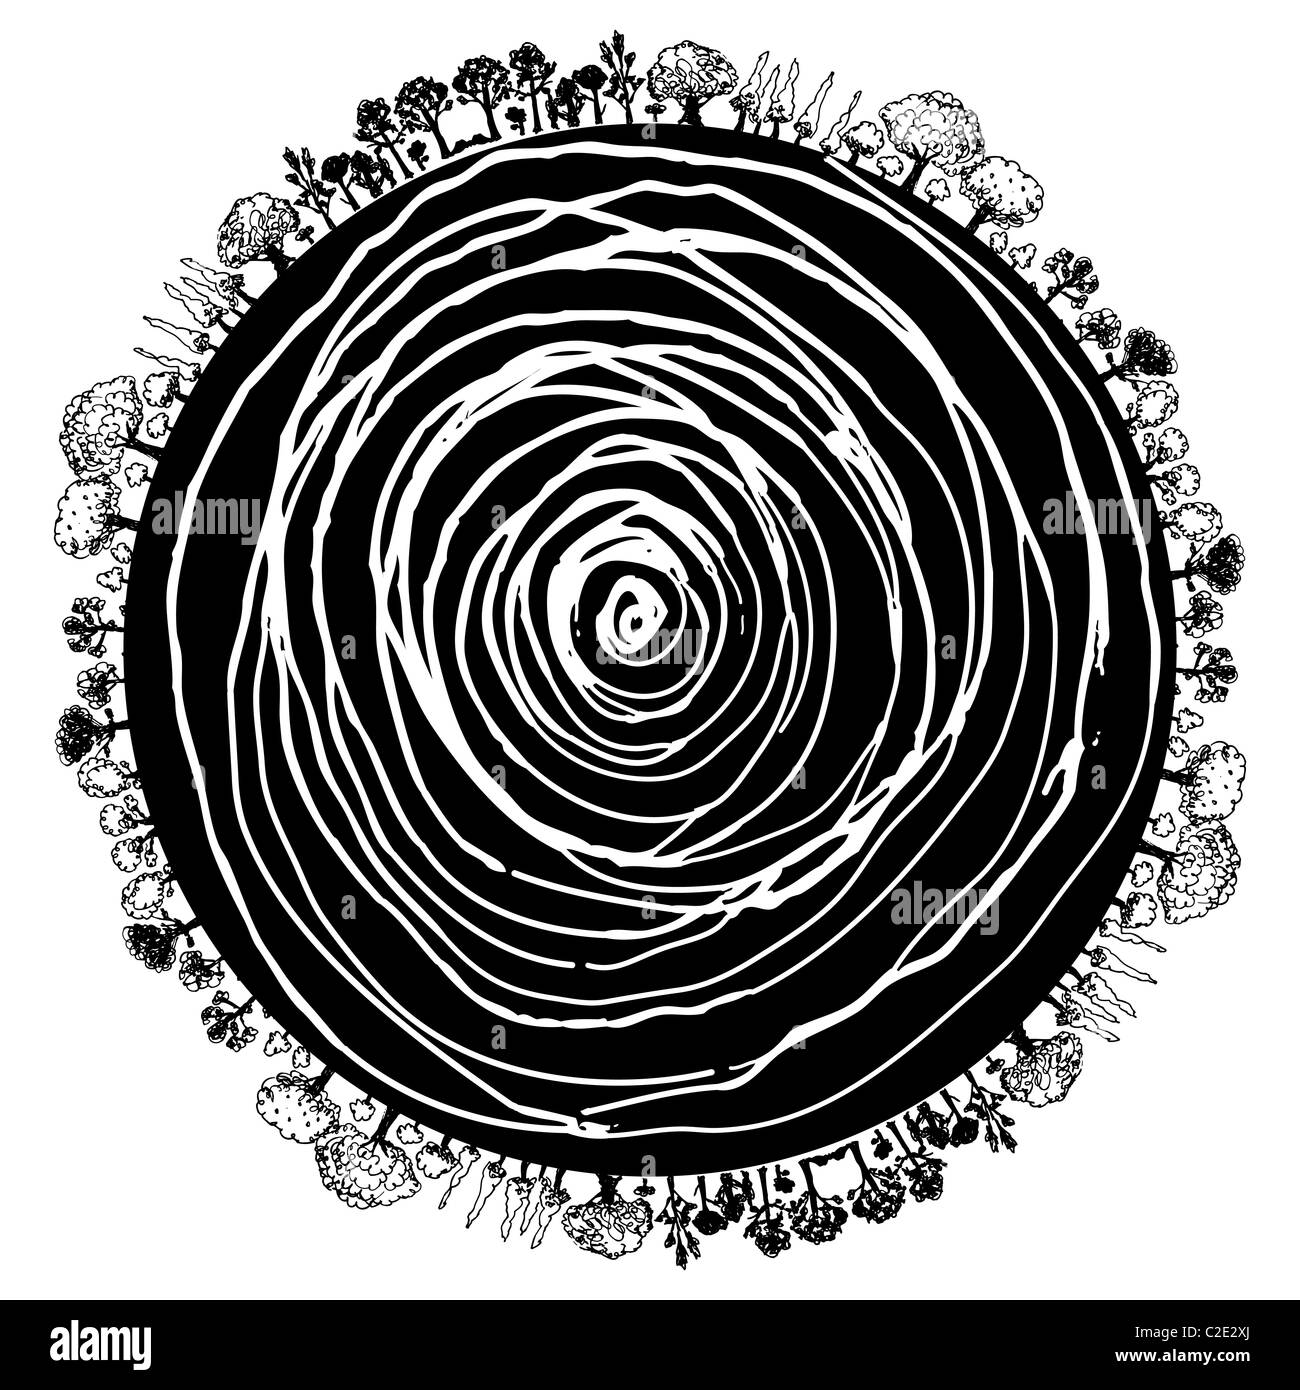 L'image d'une icône circulaire des racines des arbres et les arbres environnants. Banque D'Images